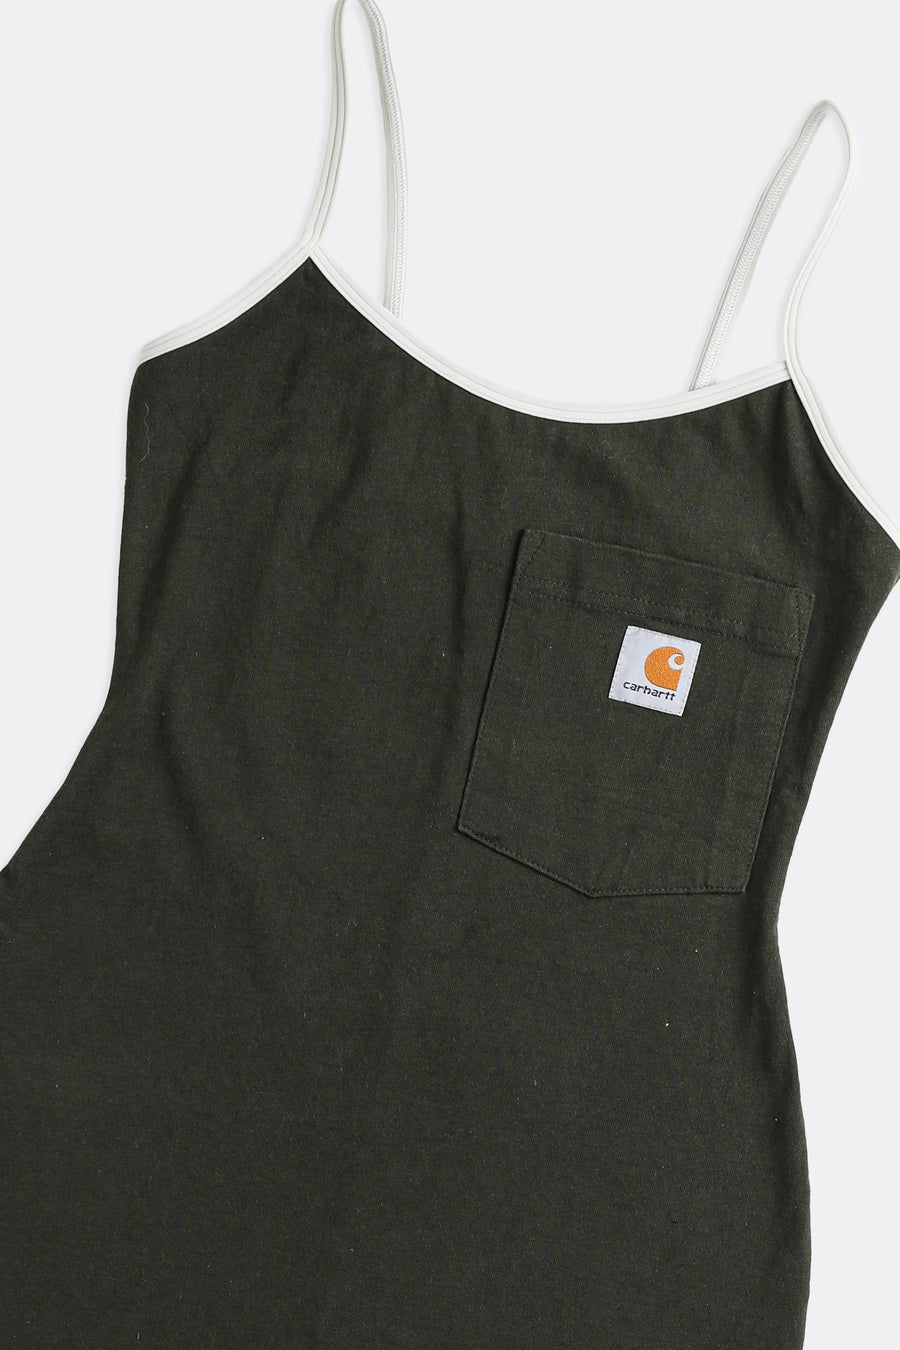 Rework Carhartt Mini Dress - XS, S, M, L